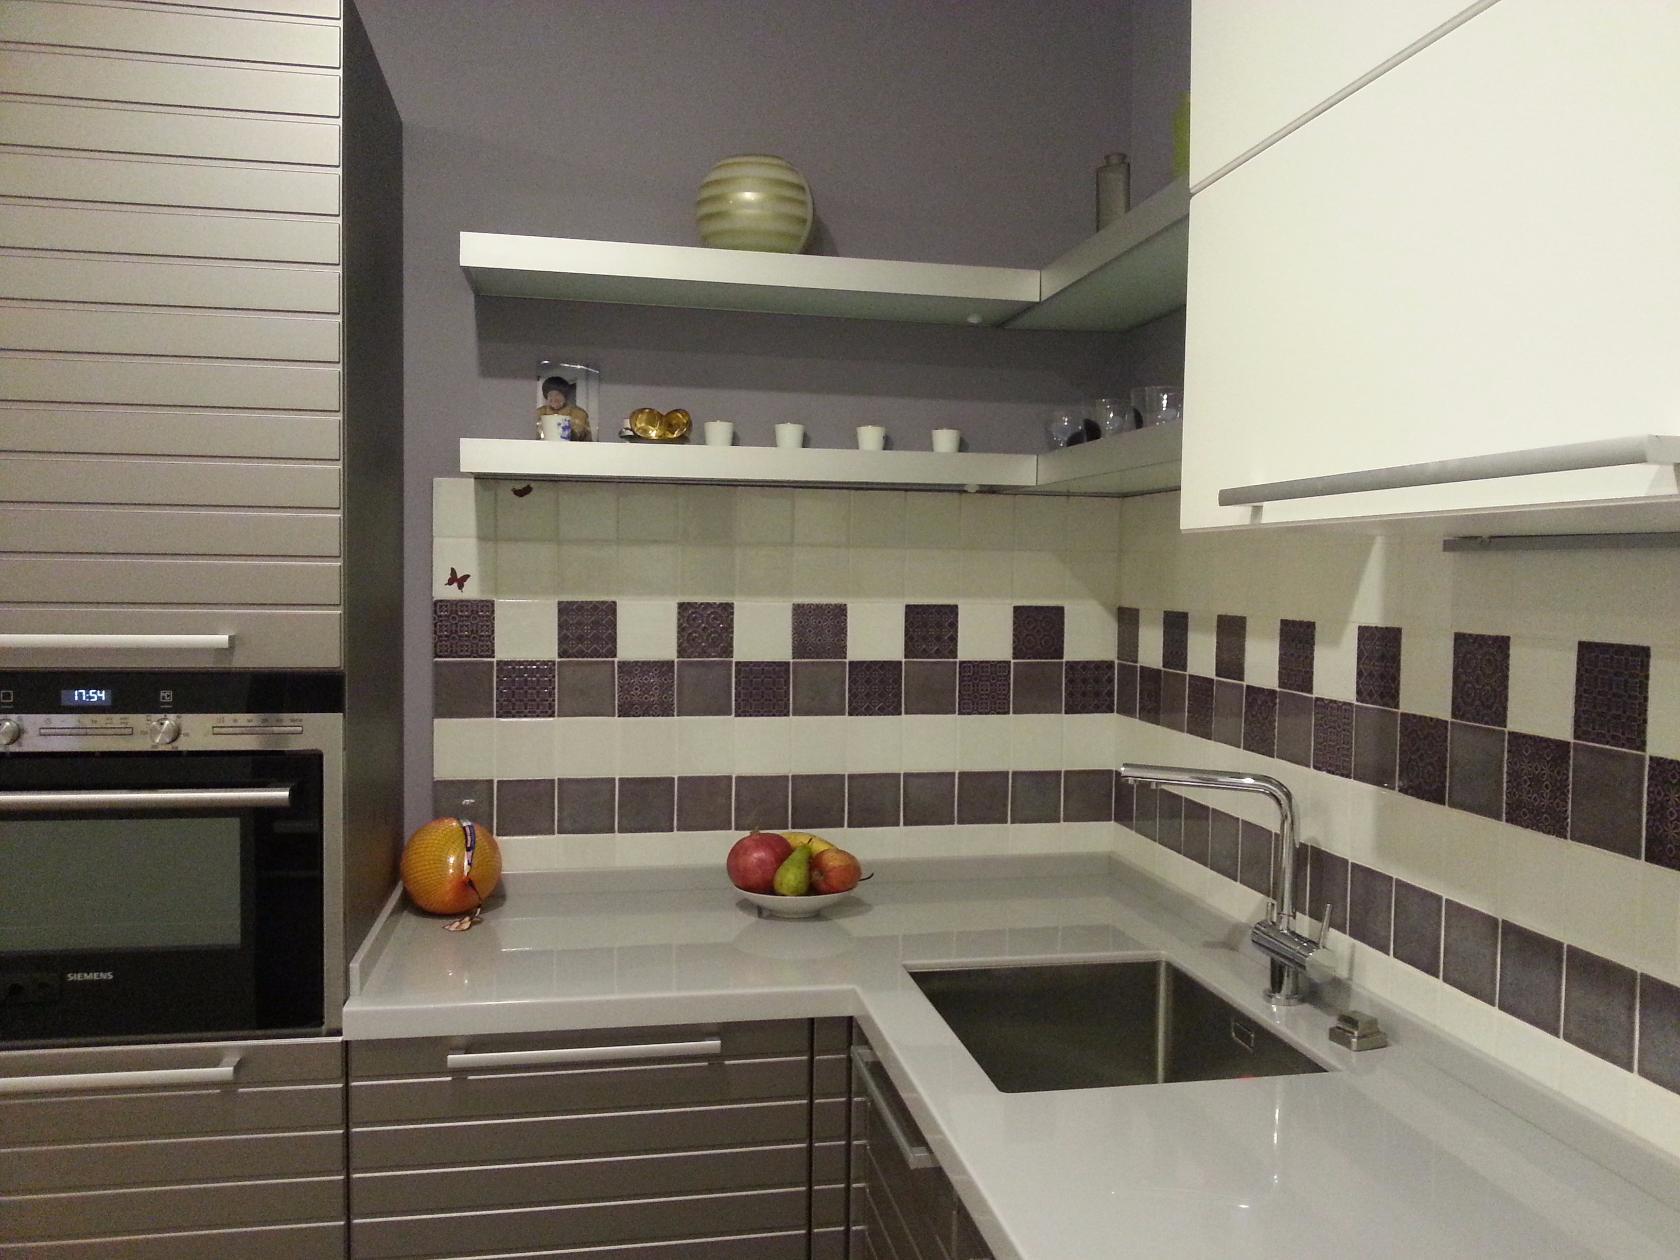 Цвет серый кашемир в интерьере кухни